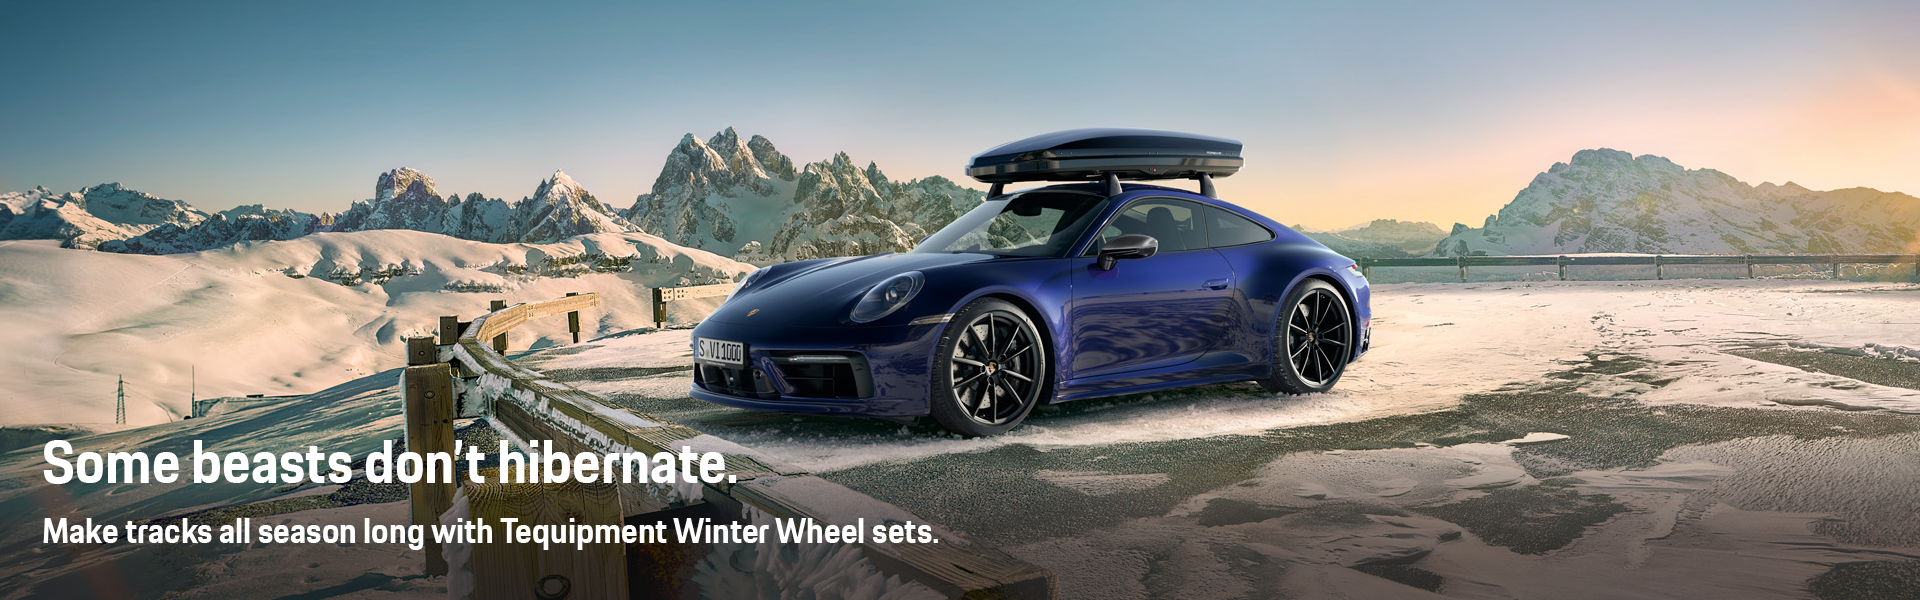 Purchase Tequipment Winter Wheel Sets at Porsche Tysons Corner